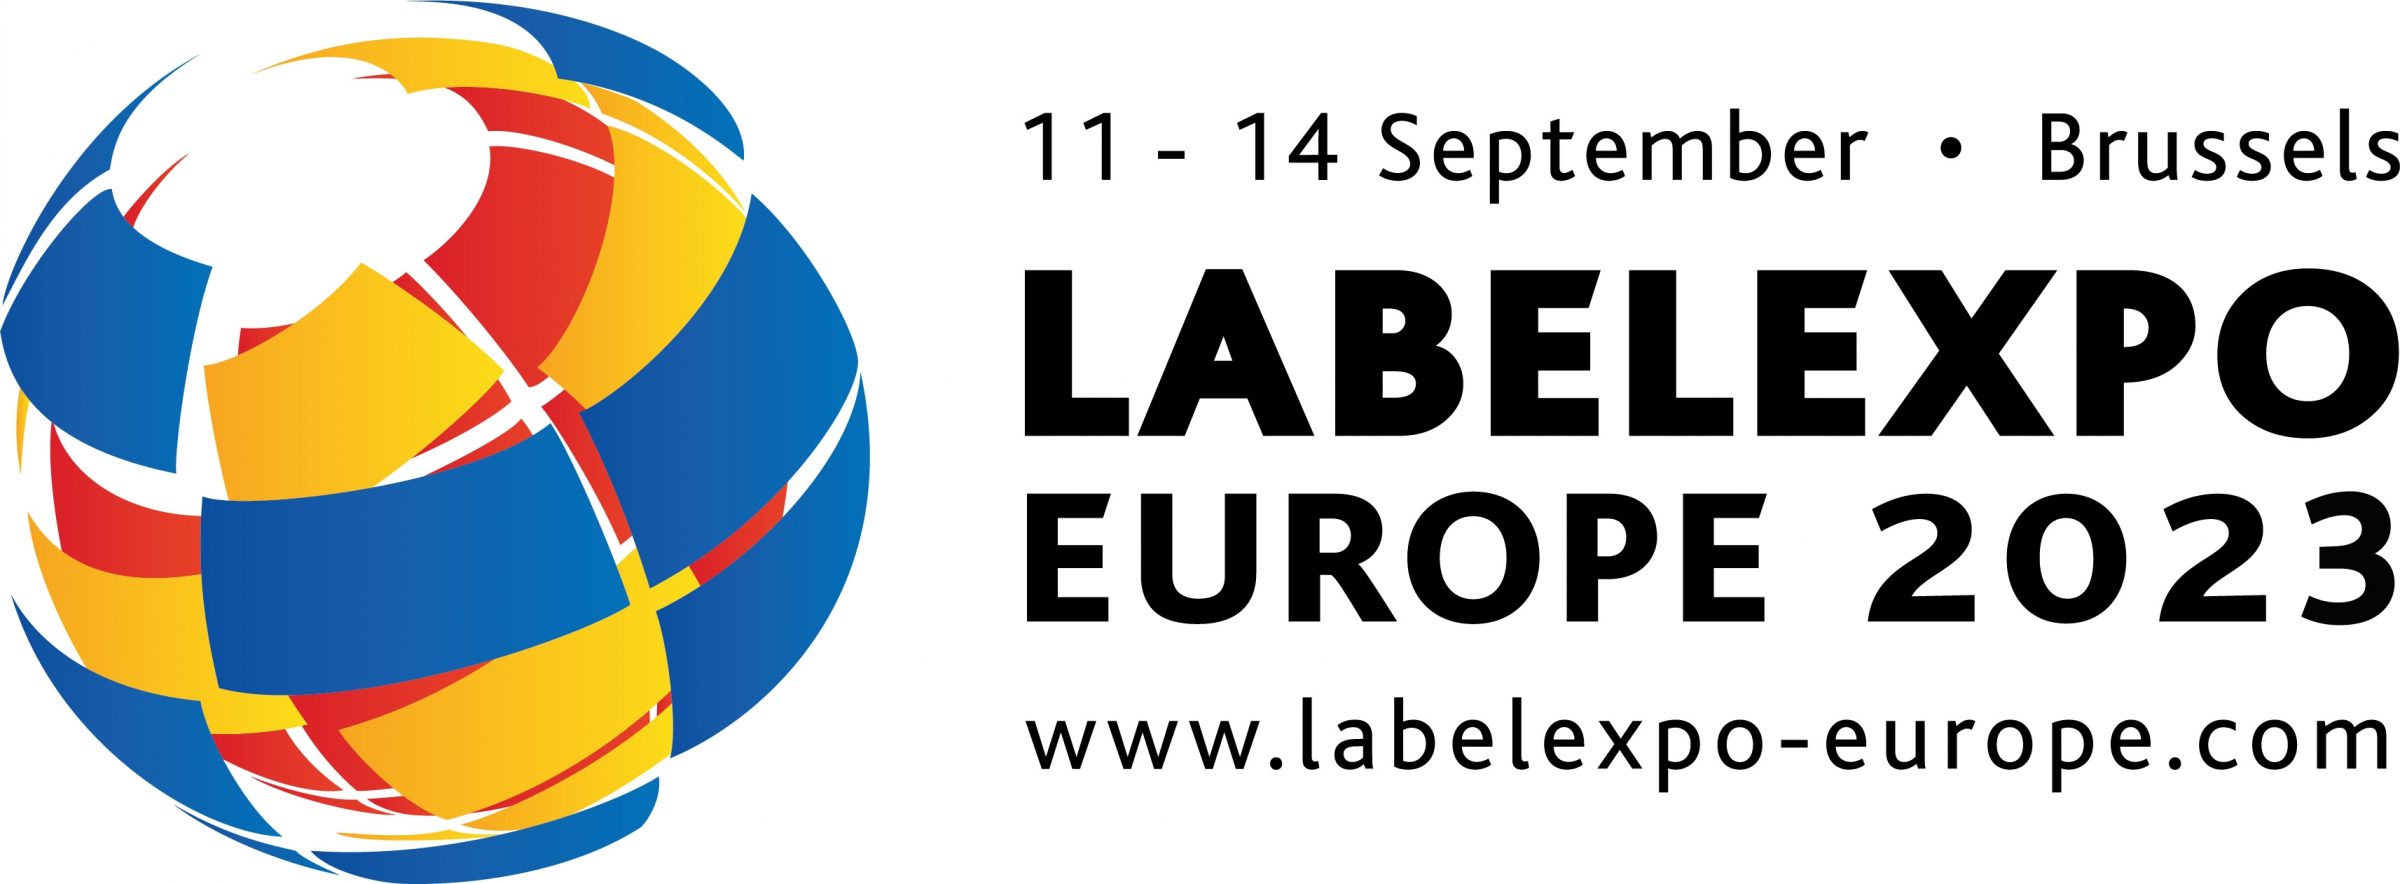 Labelexpo Europe 2023 Horiz Black